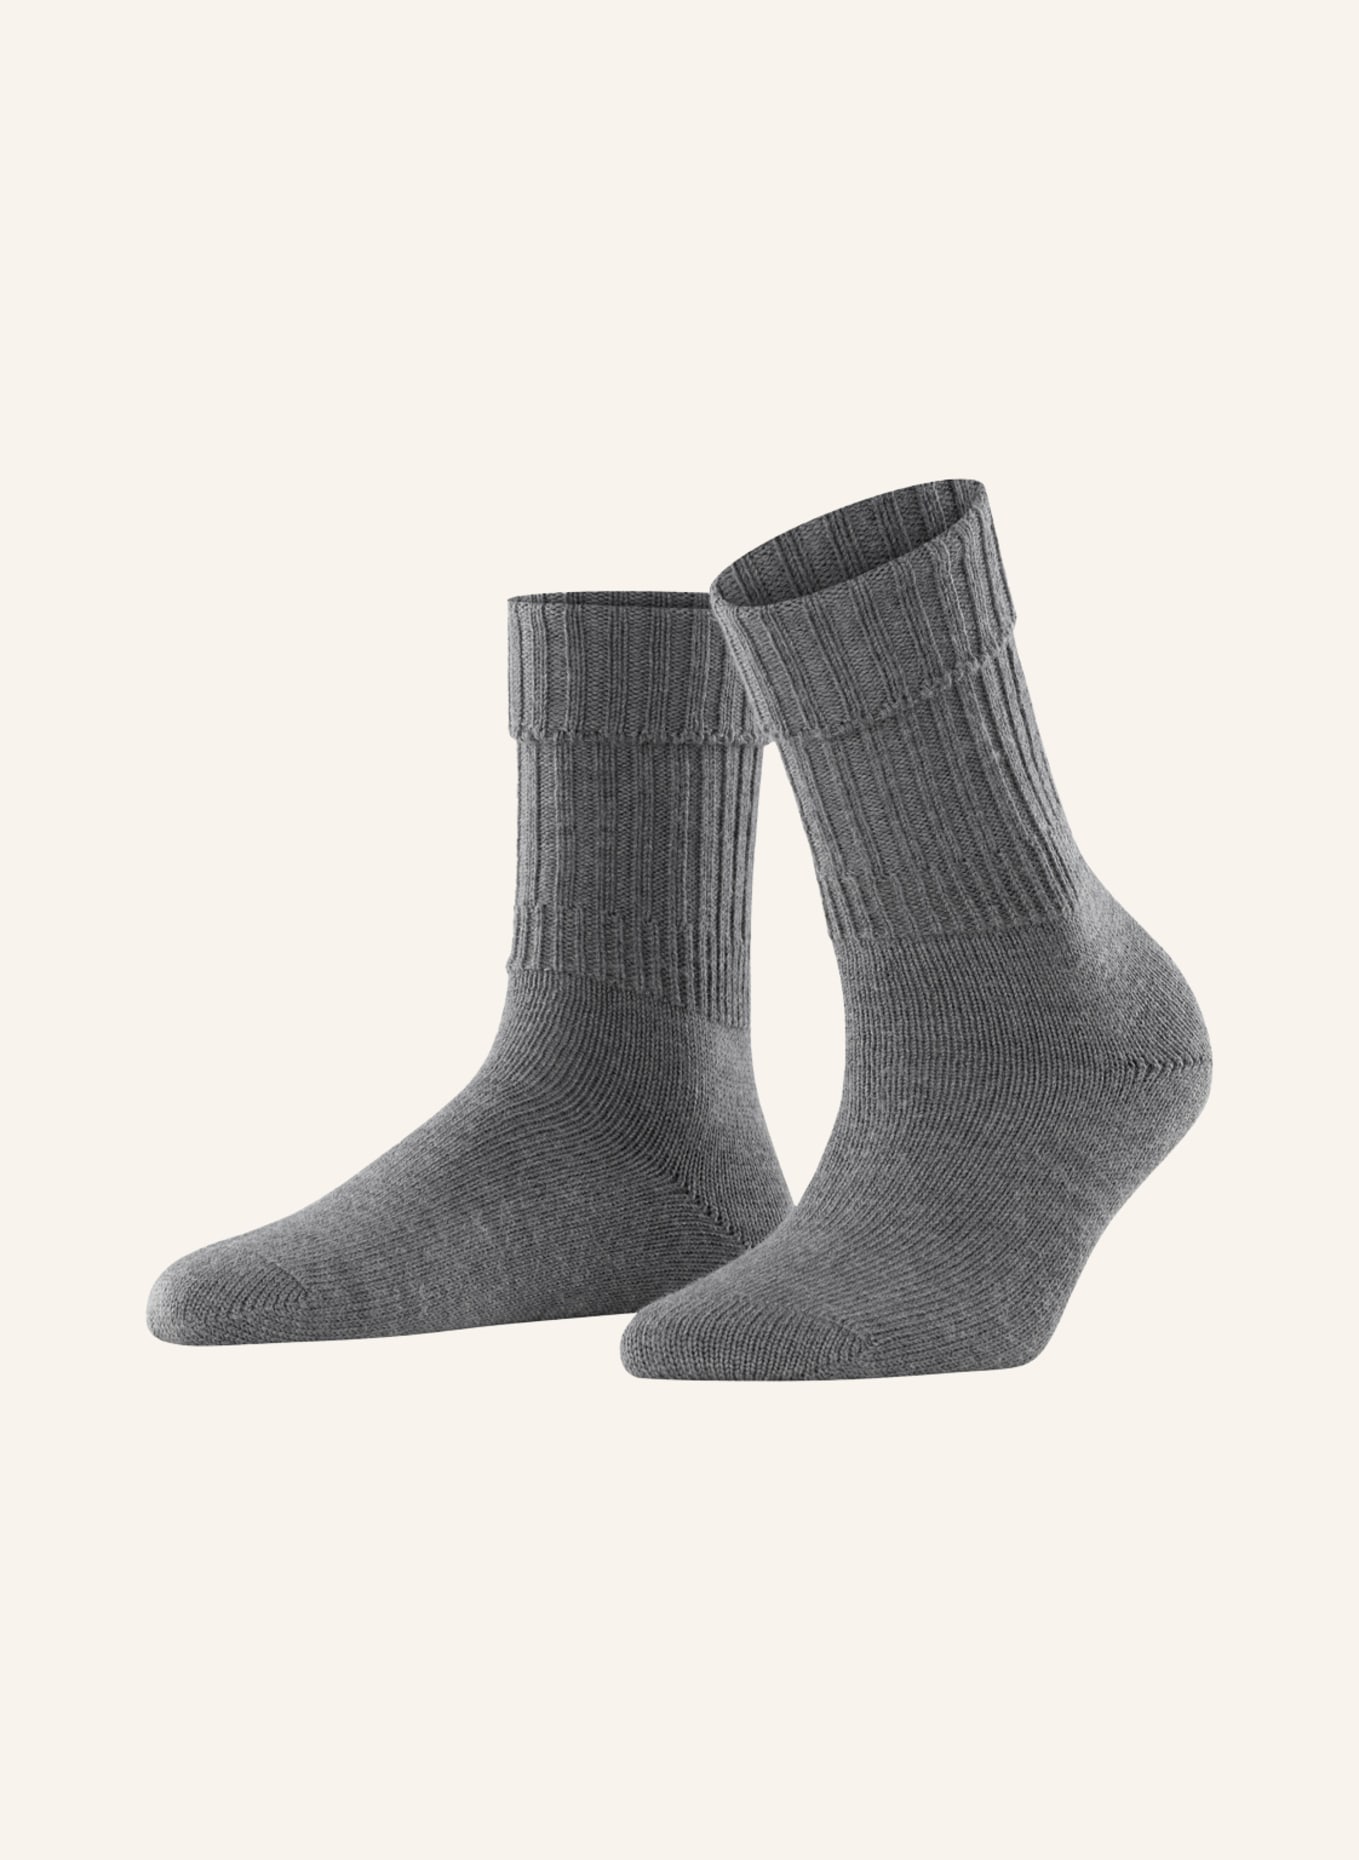 FALKE Socken STRIGGINGS, Farbe: 3070 DARK GREY (Bild 1)